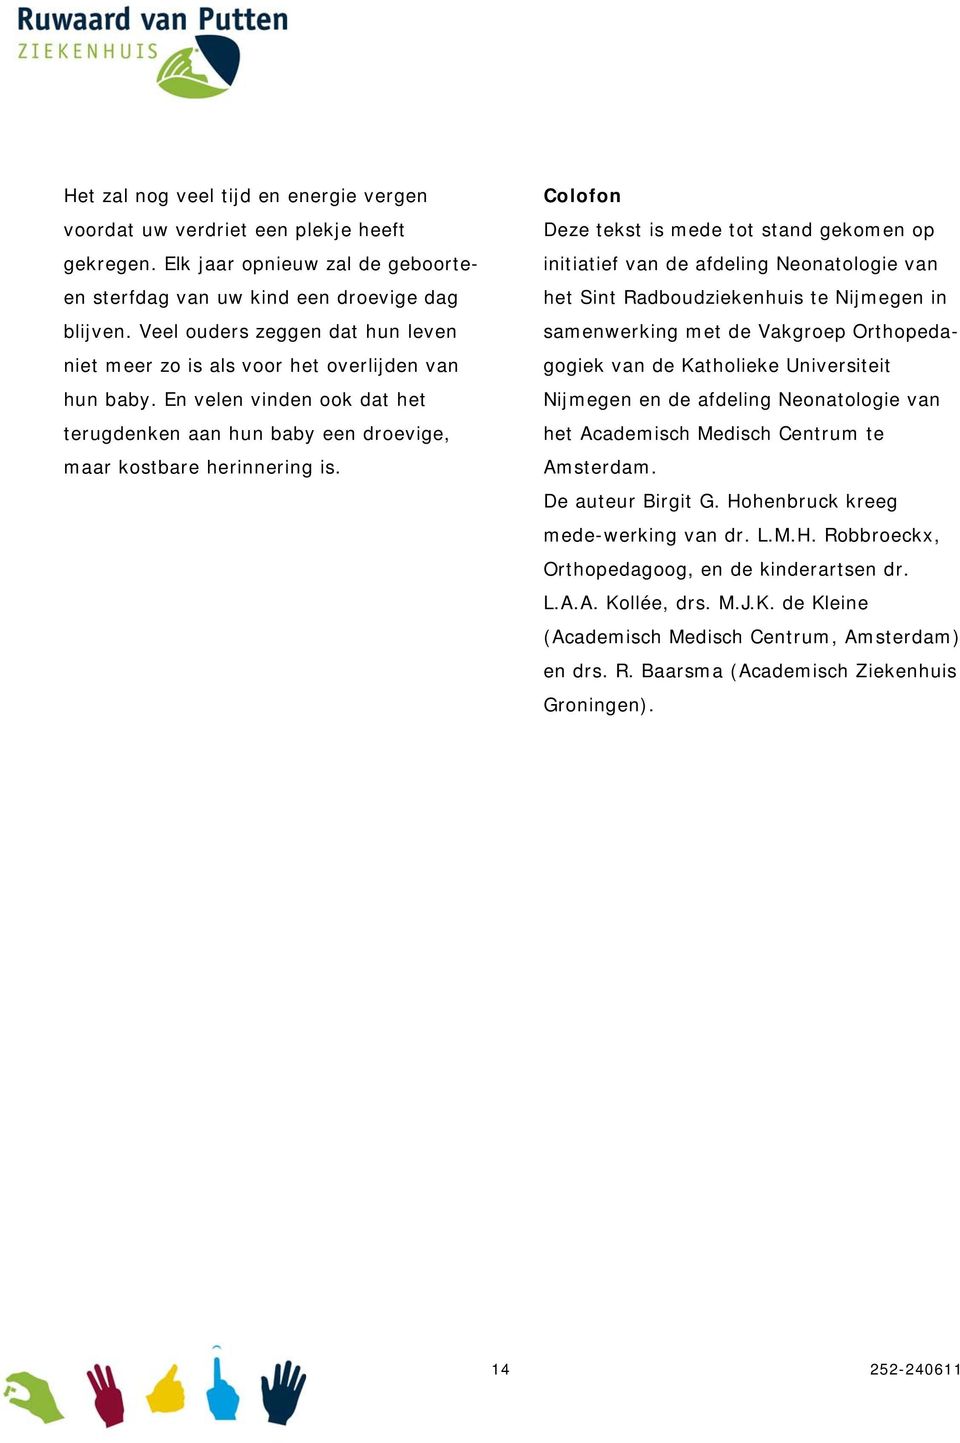 Colofon Deze tekst is mede tot stand gekomen op initiatief van de afdeling Neonatologie van het Sint Radboudziekenhuis te Nijmegen in samenwerking met de Vakgroep Orthopedagogiek van de Katholieke